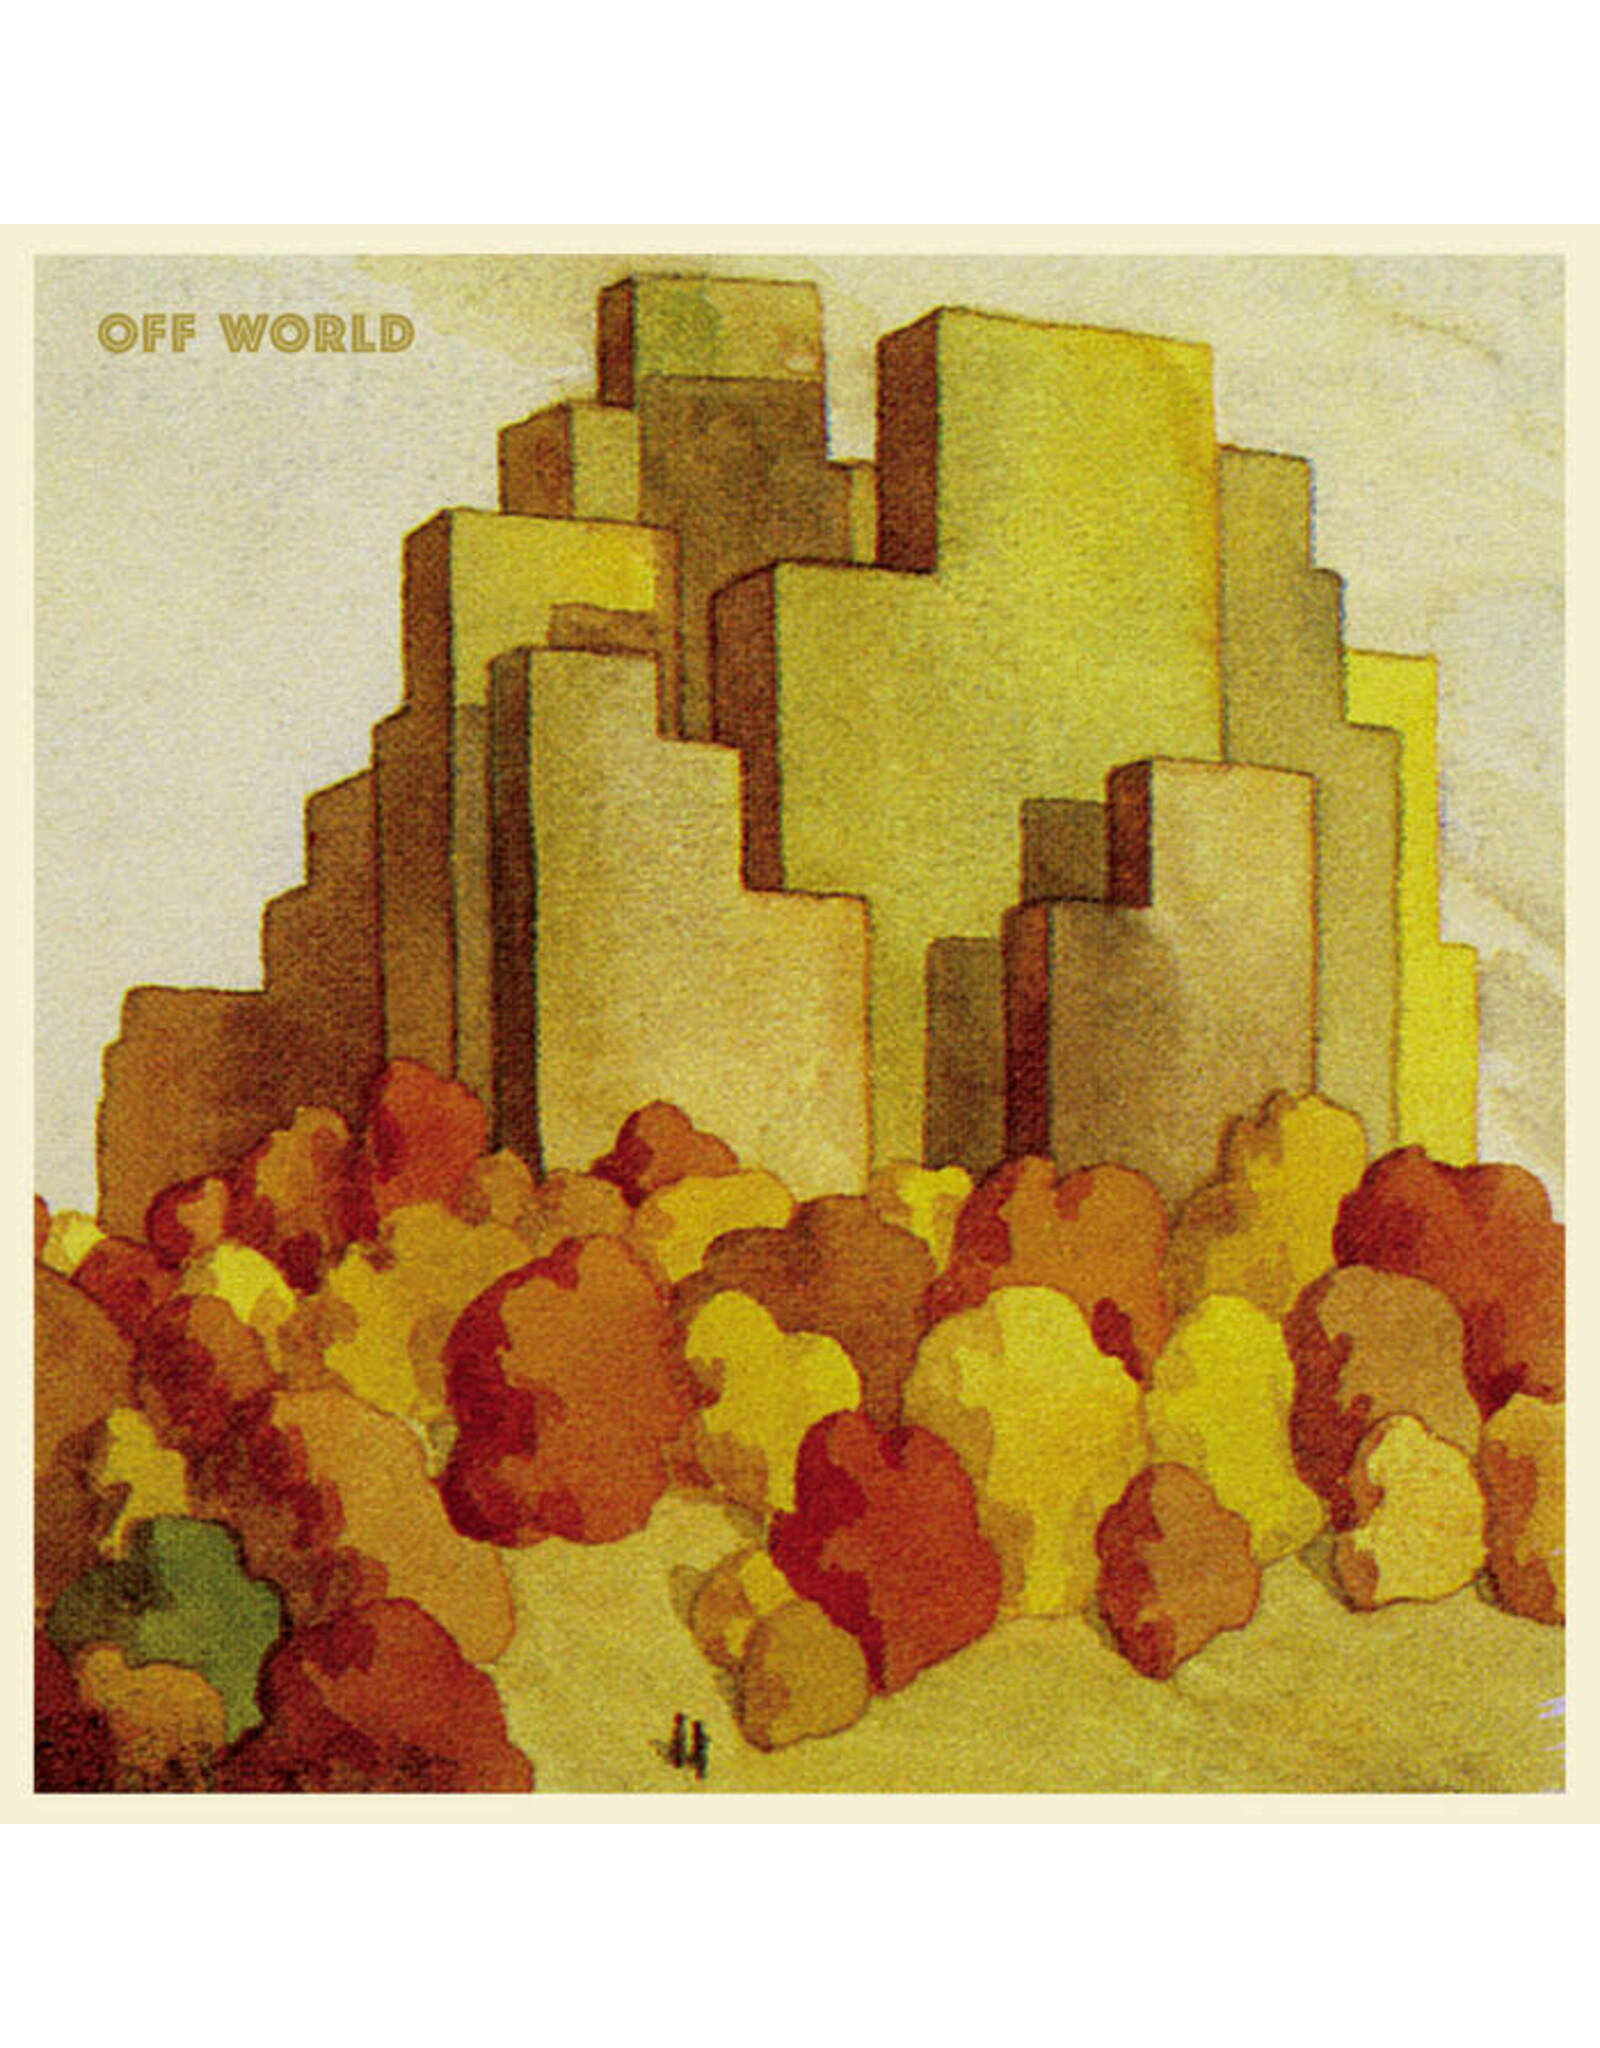 Constellation Off World: Off World 3 LP